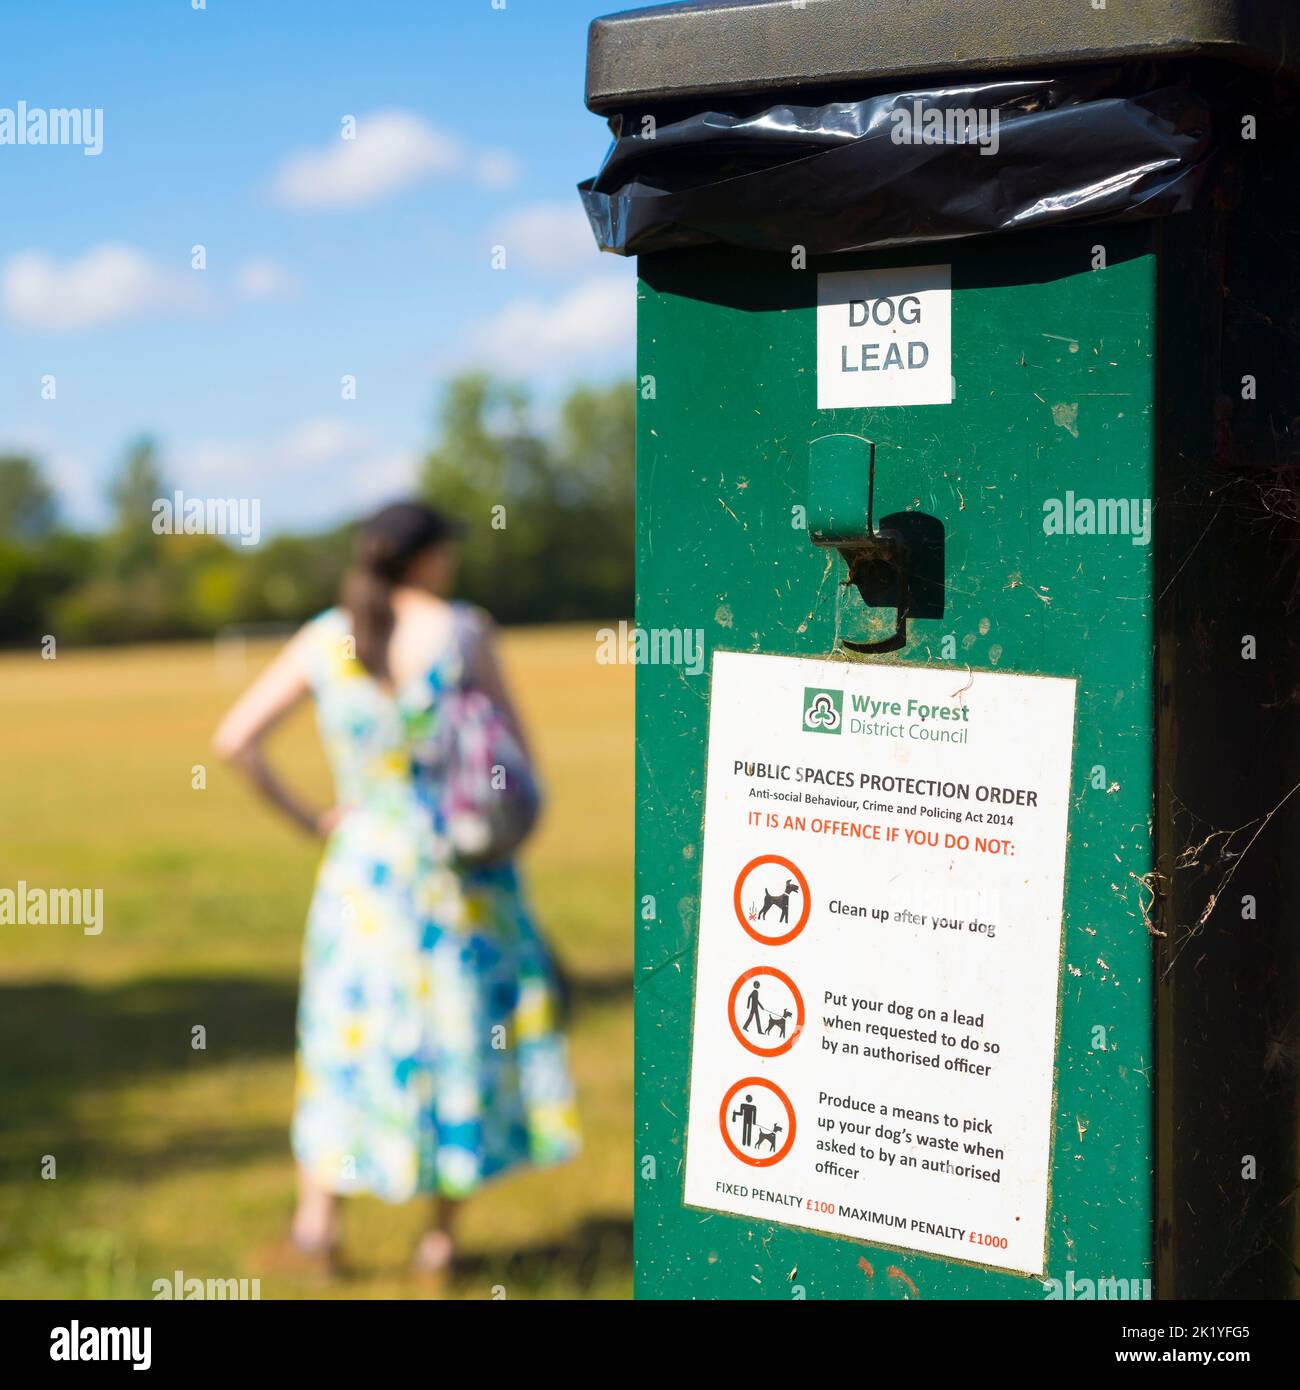 Ordonnance de protection des espaces publics émise par le conseil du district forestier de Wyre coincée dans une poubelle à déchets pour chiens dans un parc public. Instructions aux propriétaires de chiens. Banque D'Images